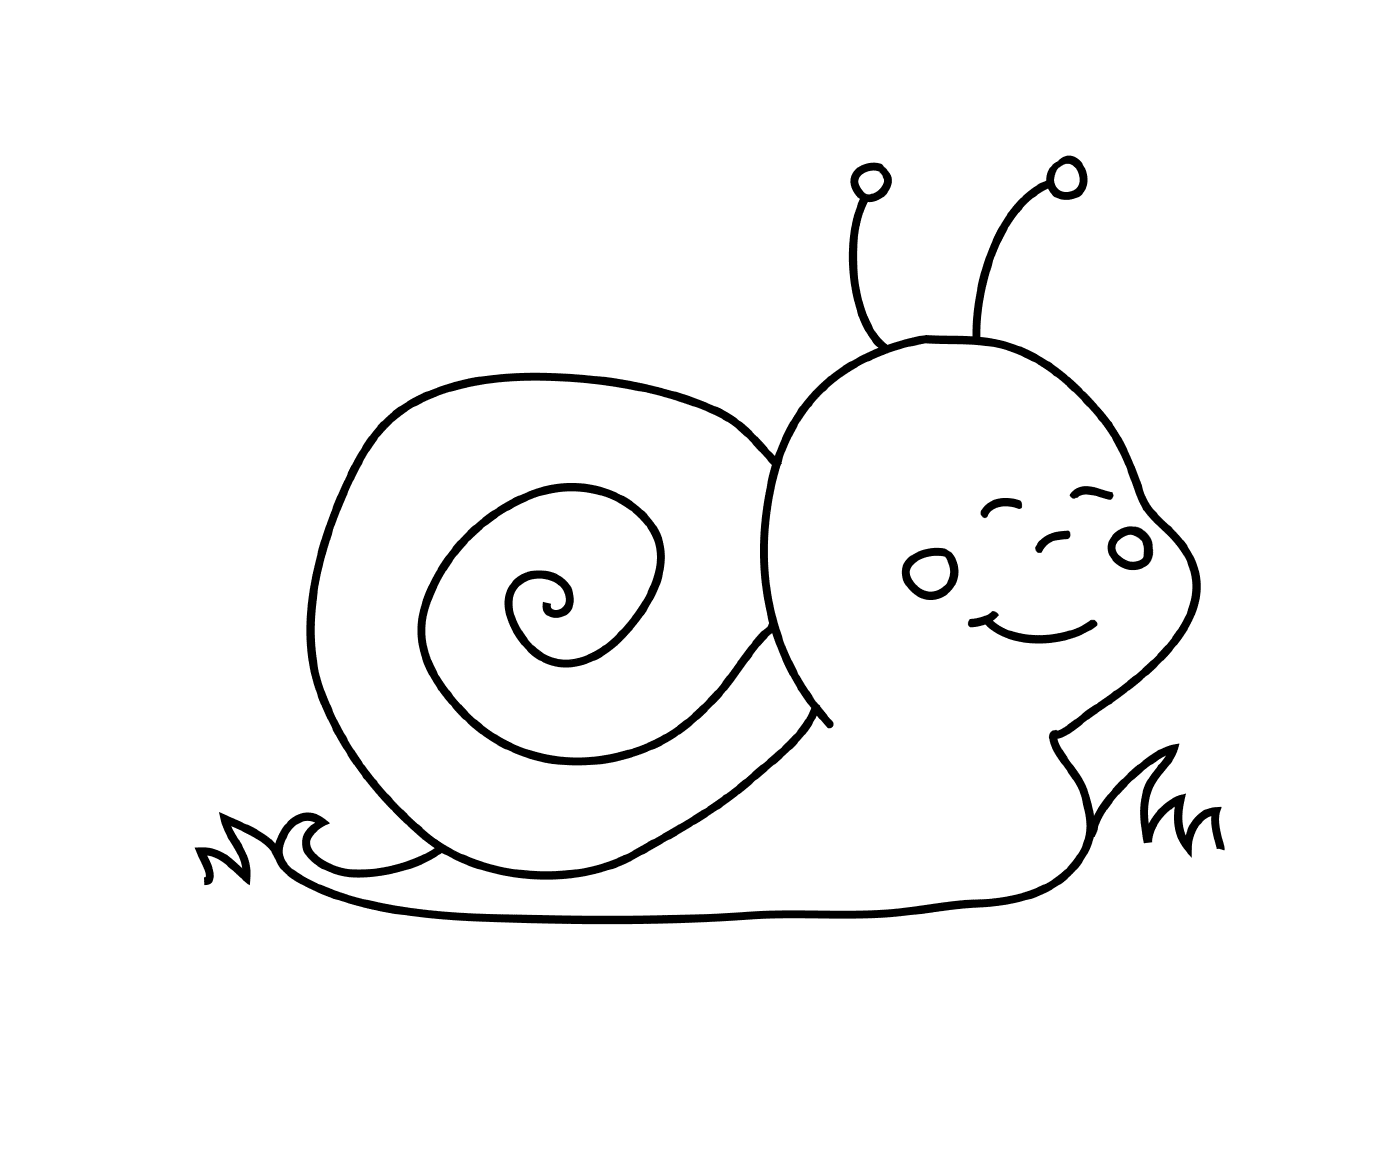   Un escargot dans le style des Minions 